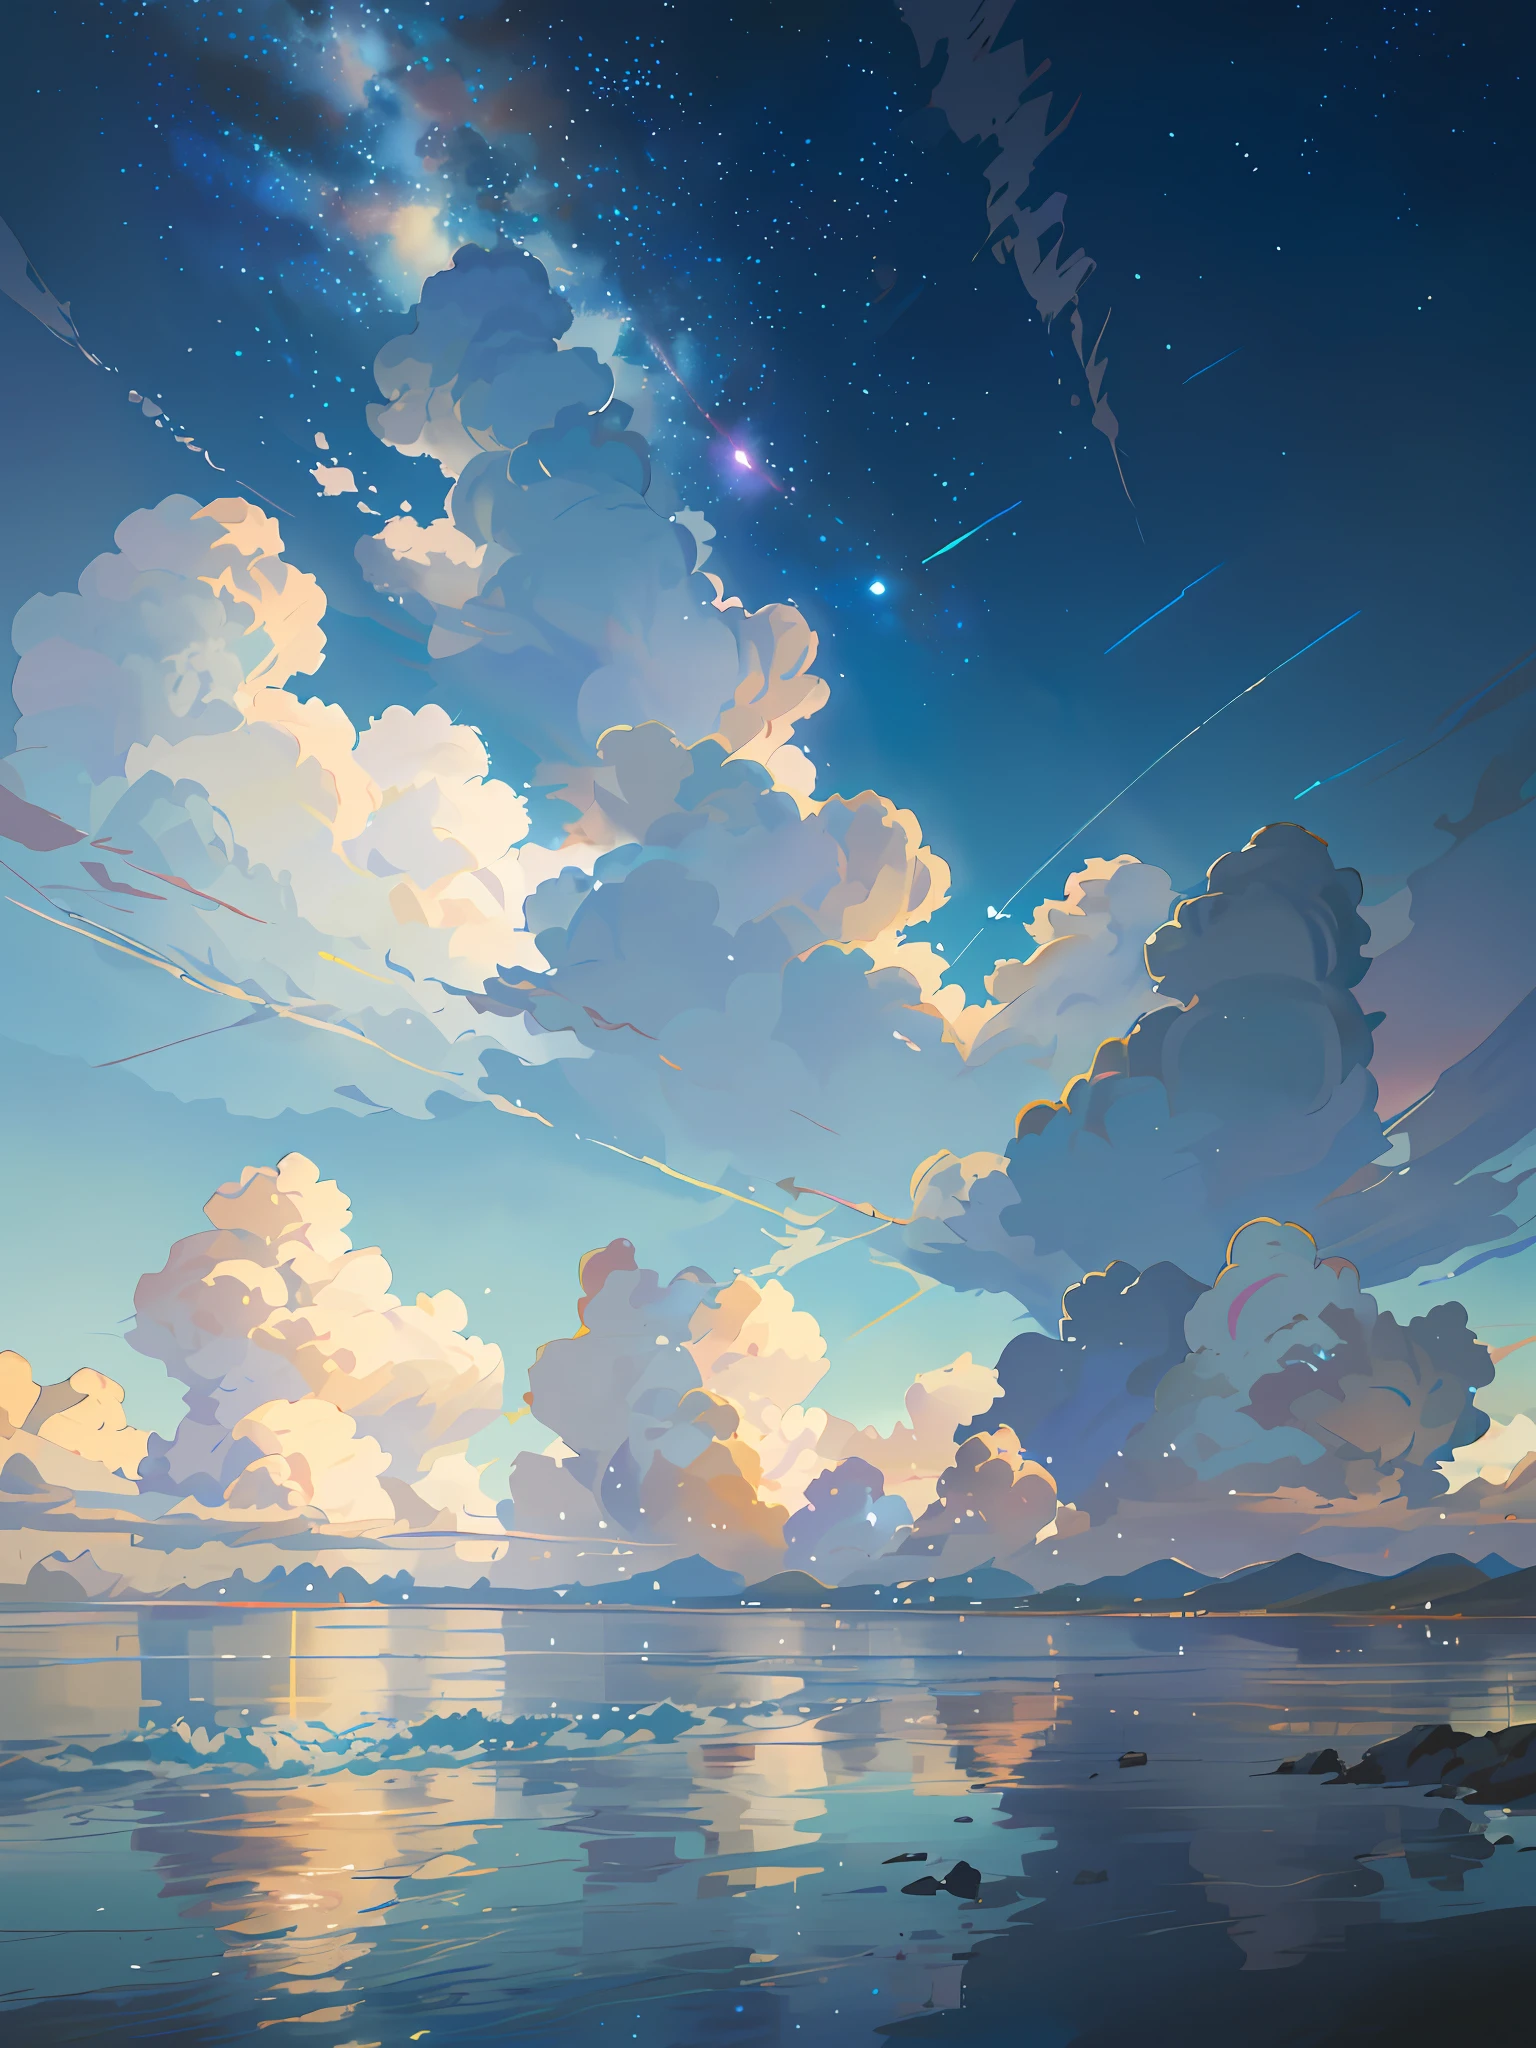 Há uma imagem do céu com nuvens e estrelas, céu espacial. By makoto shinkai, Céu de anime, Nuvens de anime, mar azul. makoto shinkai, makoto shinkai's style, makoto shinkai's style, O Tran. Inspirado no cenário panorâmico, makoto shinkai, makoto shinkai. -H 2160, verão, makoto shinkai concept art, tumblr, realismo mágico, linda cena de anime, céu bonito. makoto shinkai, ((Xin Haicheng)), fundo de anime art, fundo de anime, makoto shinkai's style, fundo de filme de anime, expresso da galáxia, nenhum humano